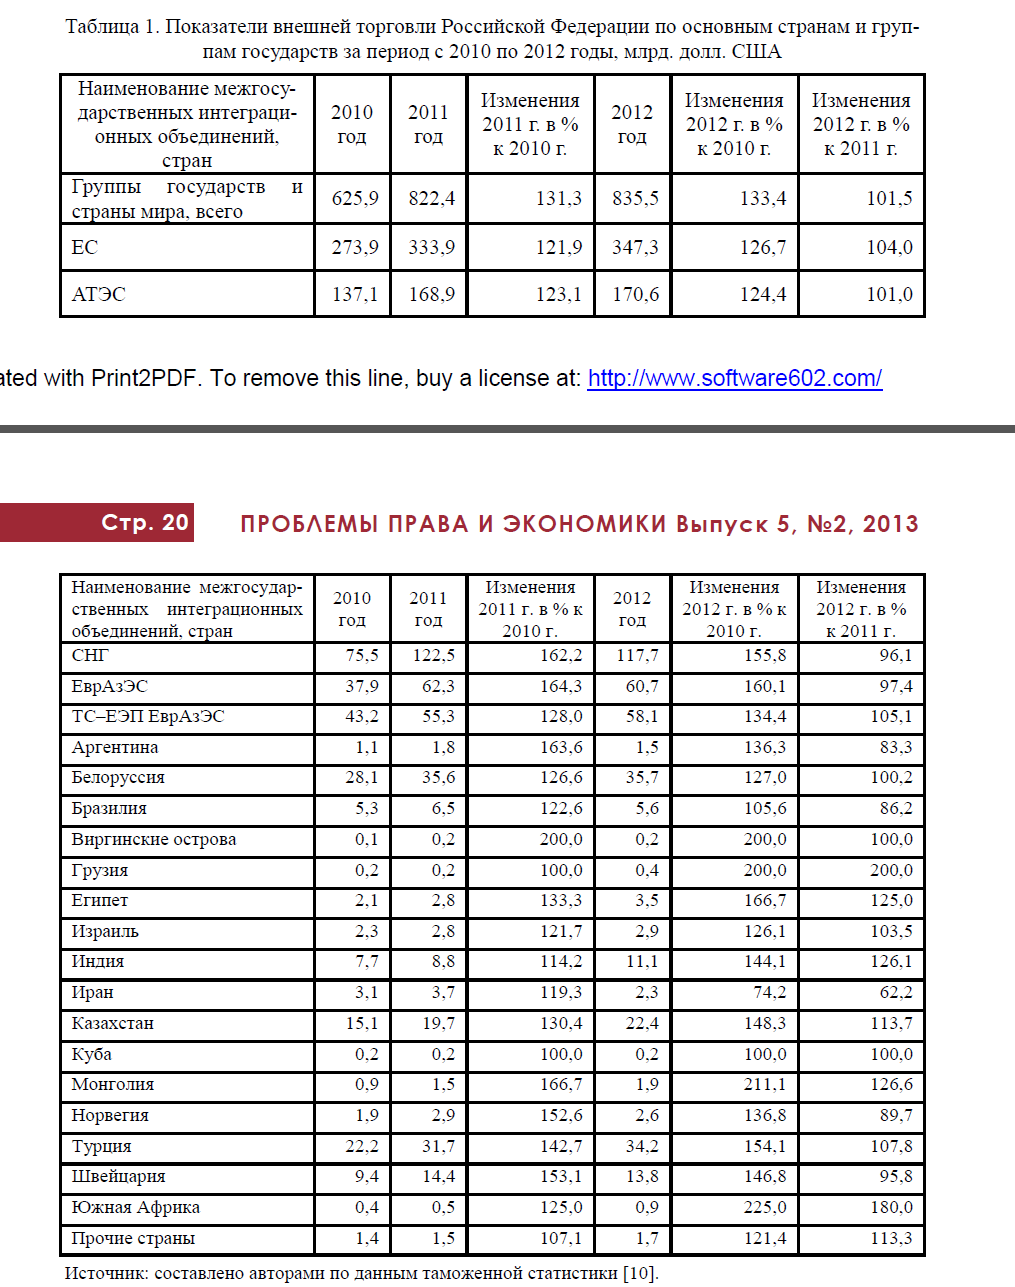 Показатели внешней торговли Российской Федерации по основным странам и группам государств за период с 2010 по 2012 годы, млрд. долл. США